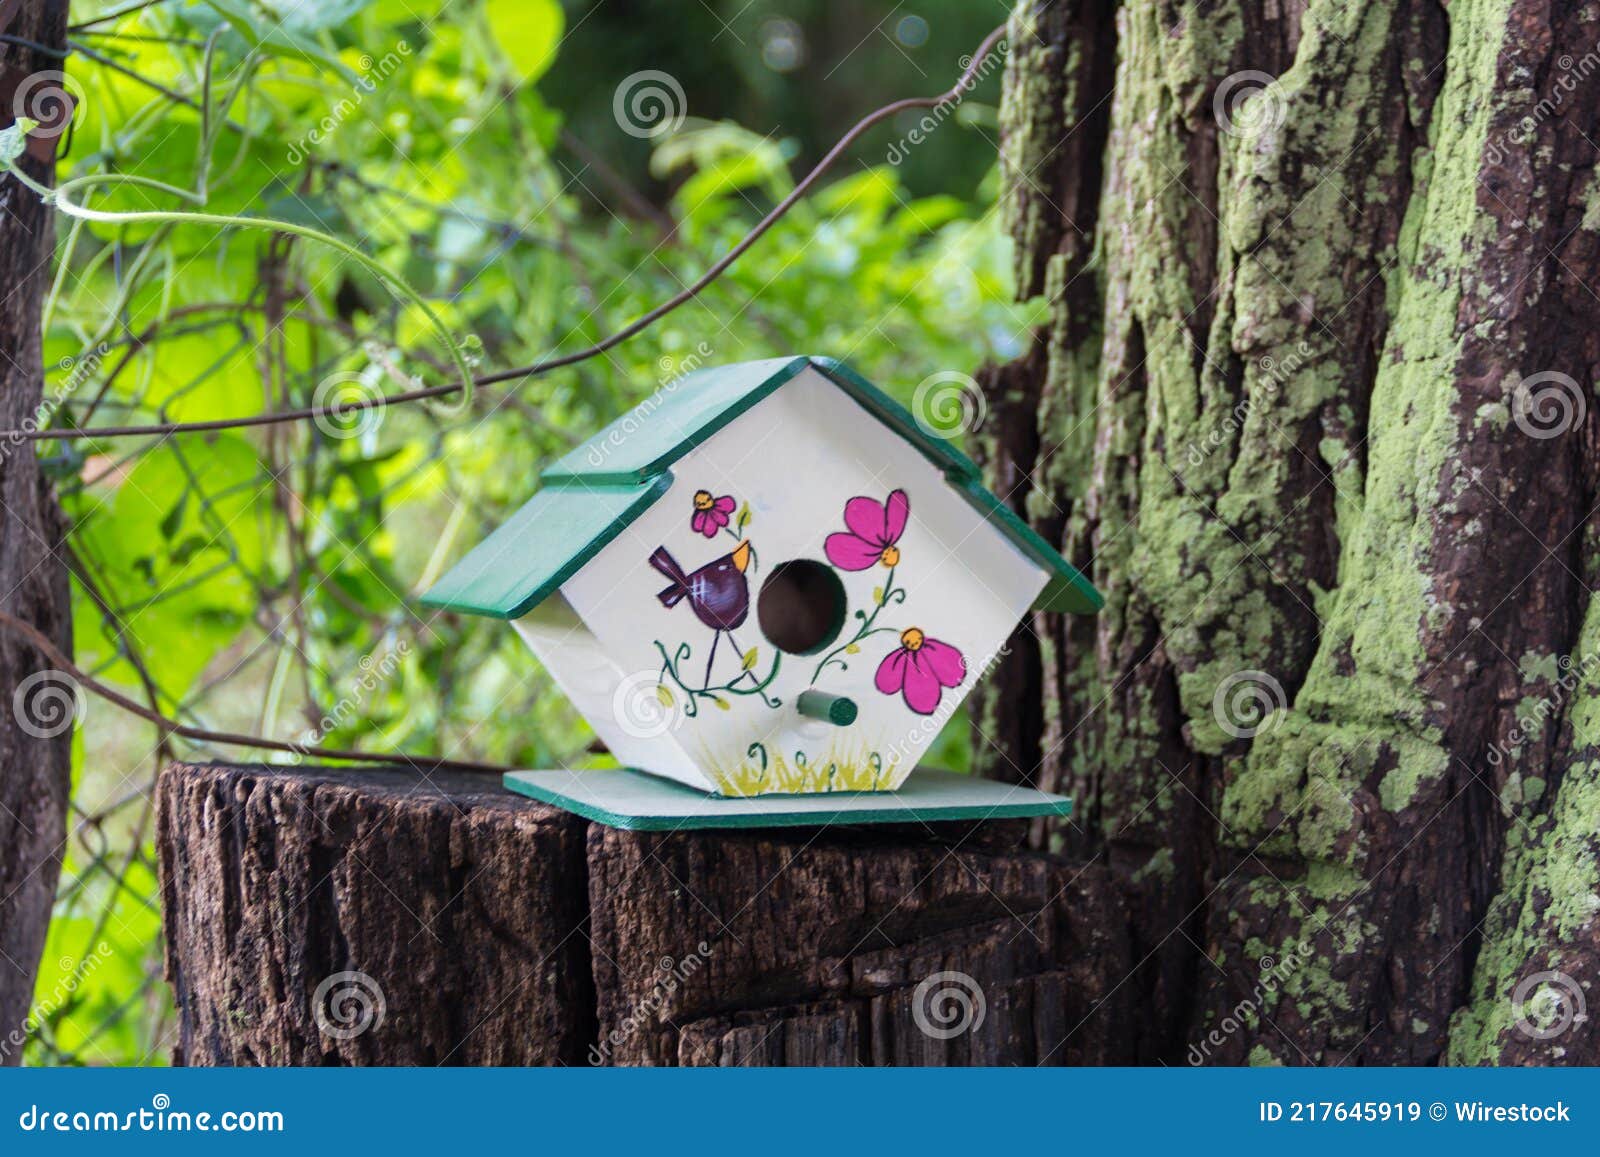 Casas Artesanales Para Pájaros Pintadas a Mano En El Tronco De árbol Imagen  de archivo - Imagen de habitat, handmade: 217645919